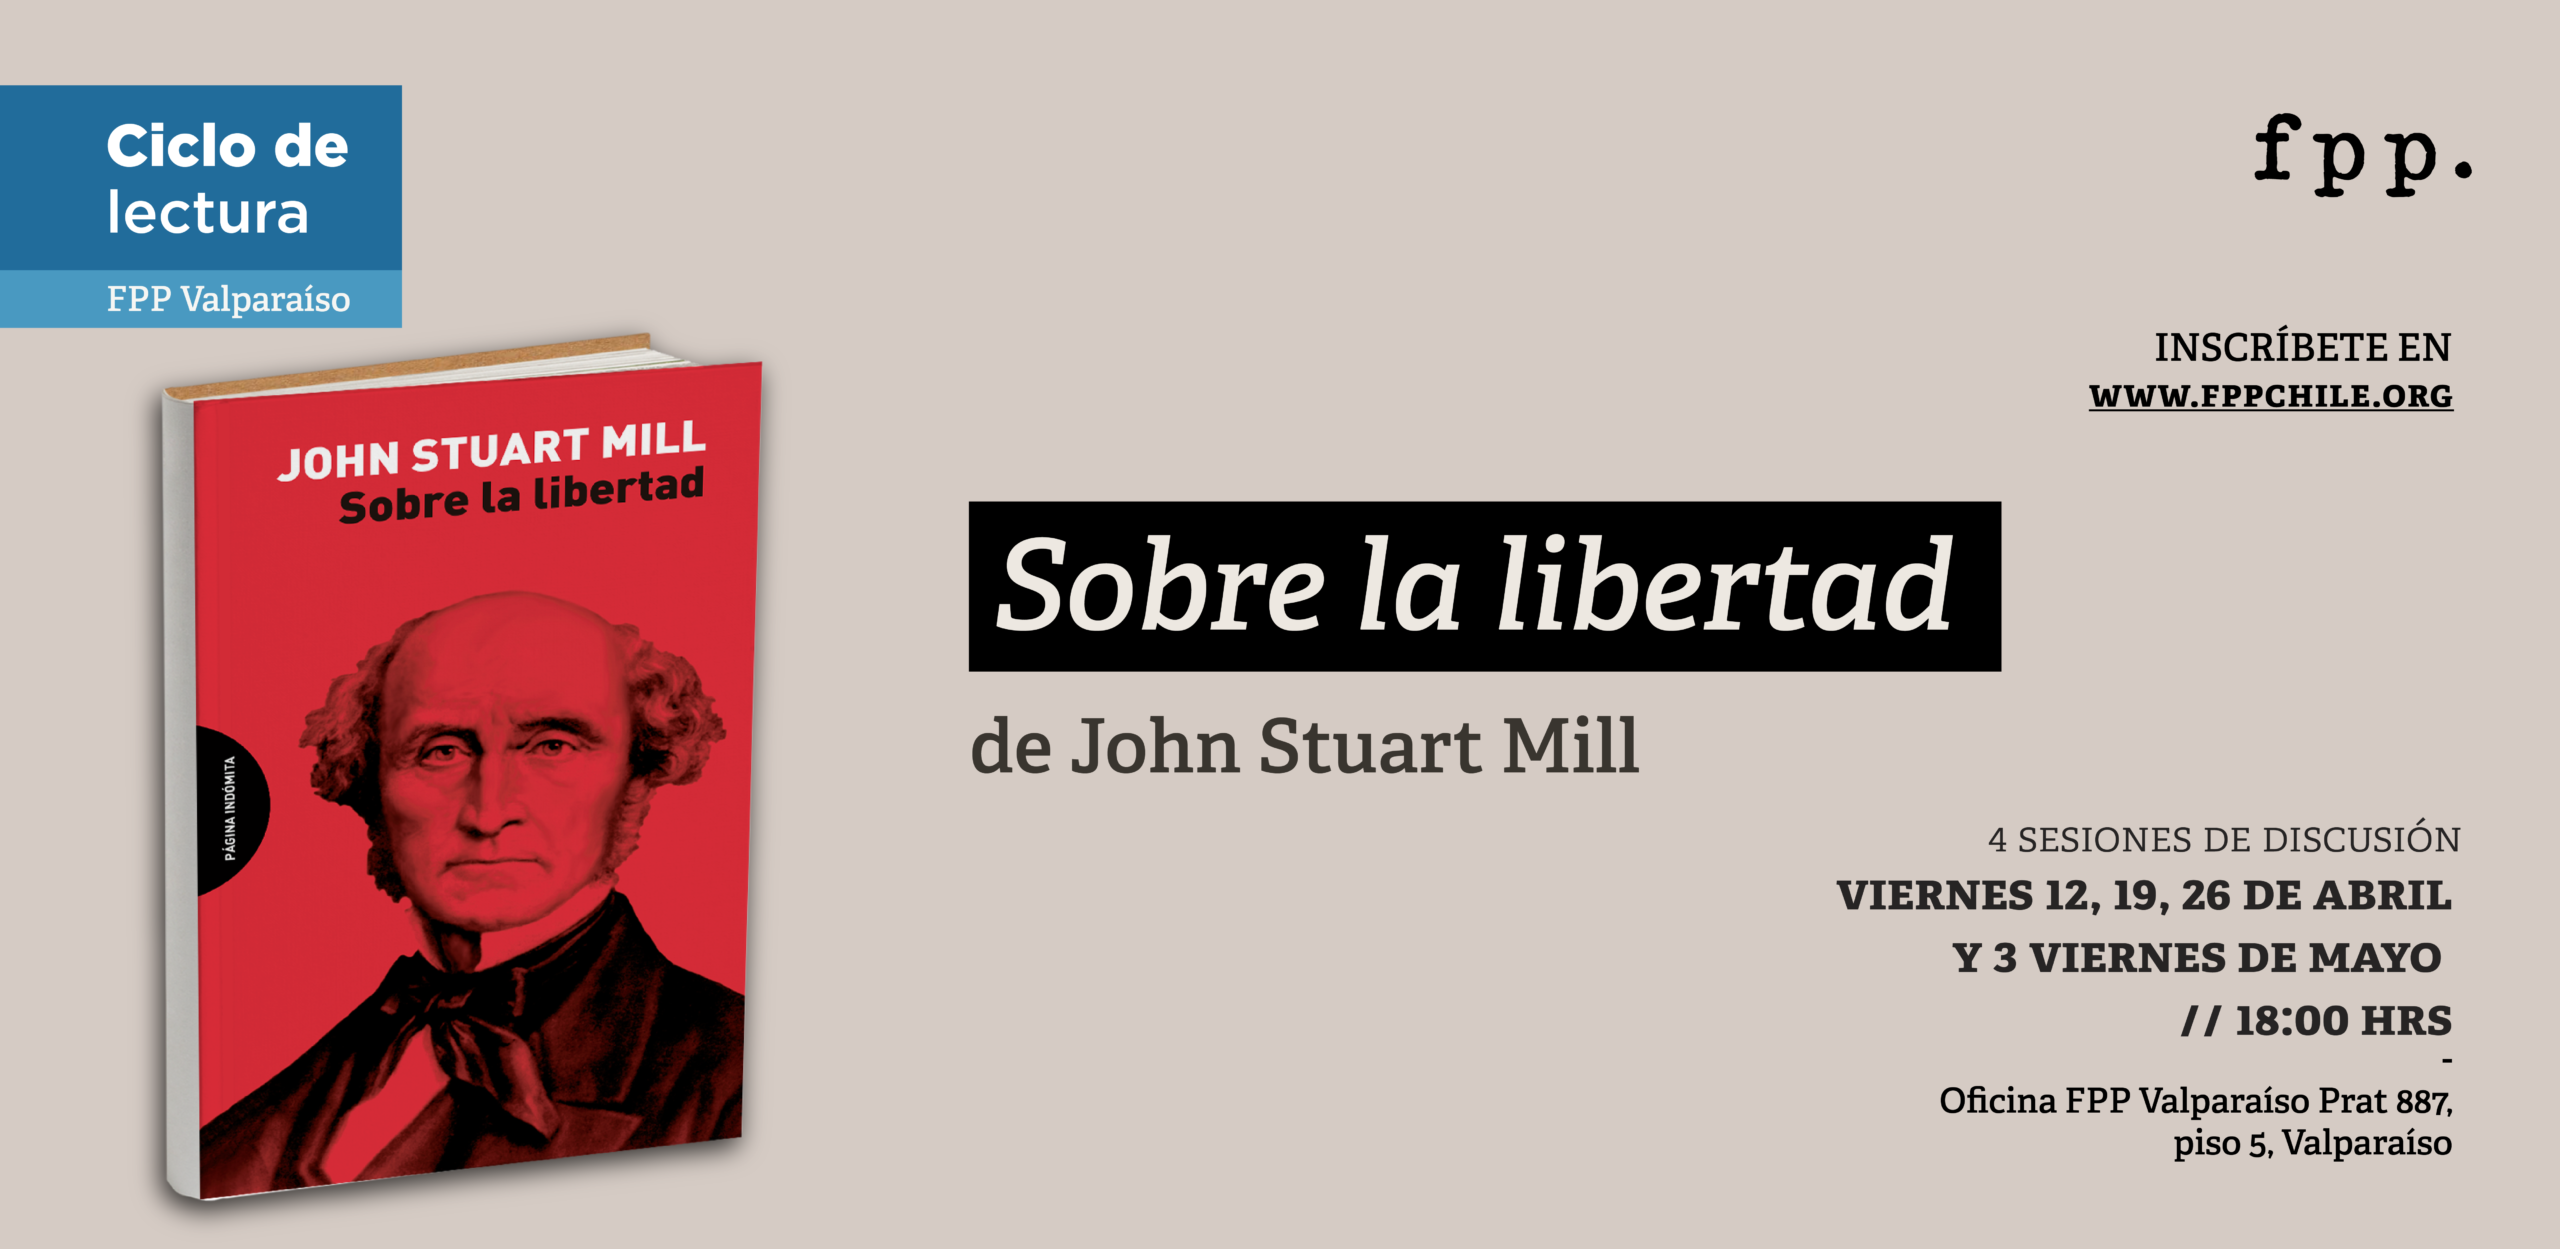 FPP Valparaíso | Ciclo de lectura: «Sobre la libertad» de John Stuart Mill